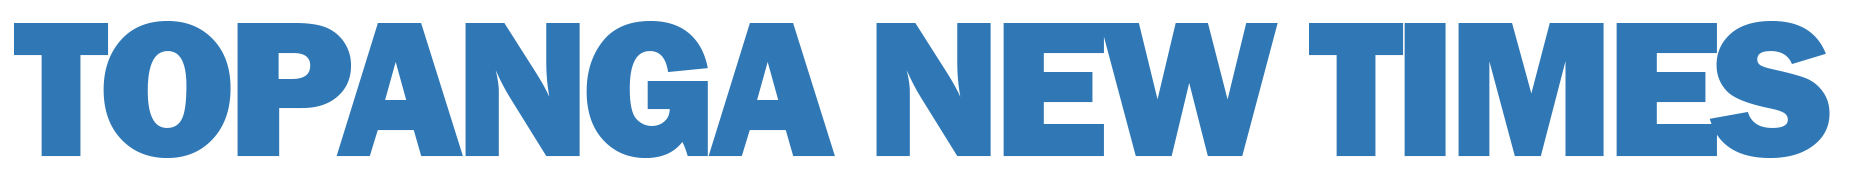 topanga new times logo